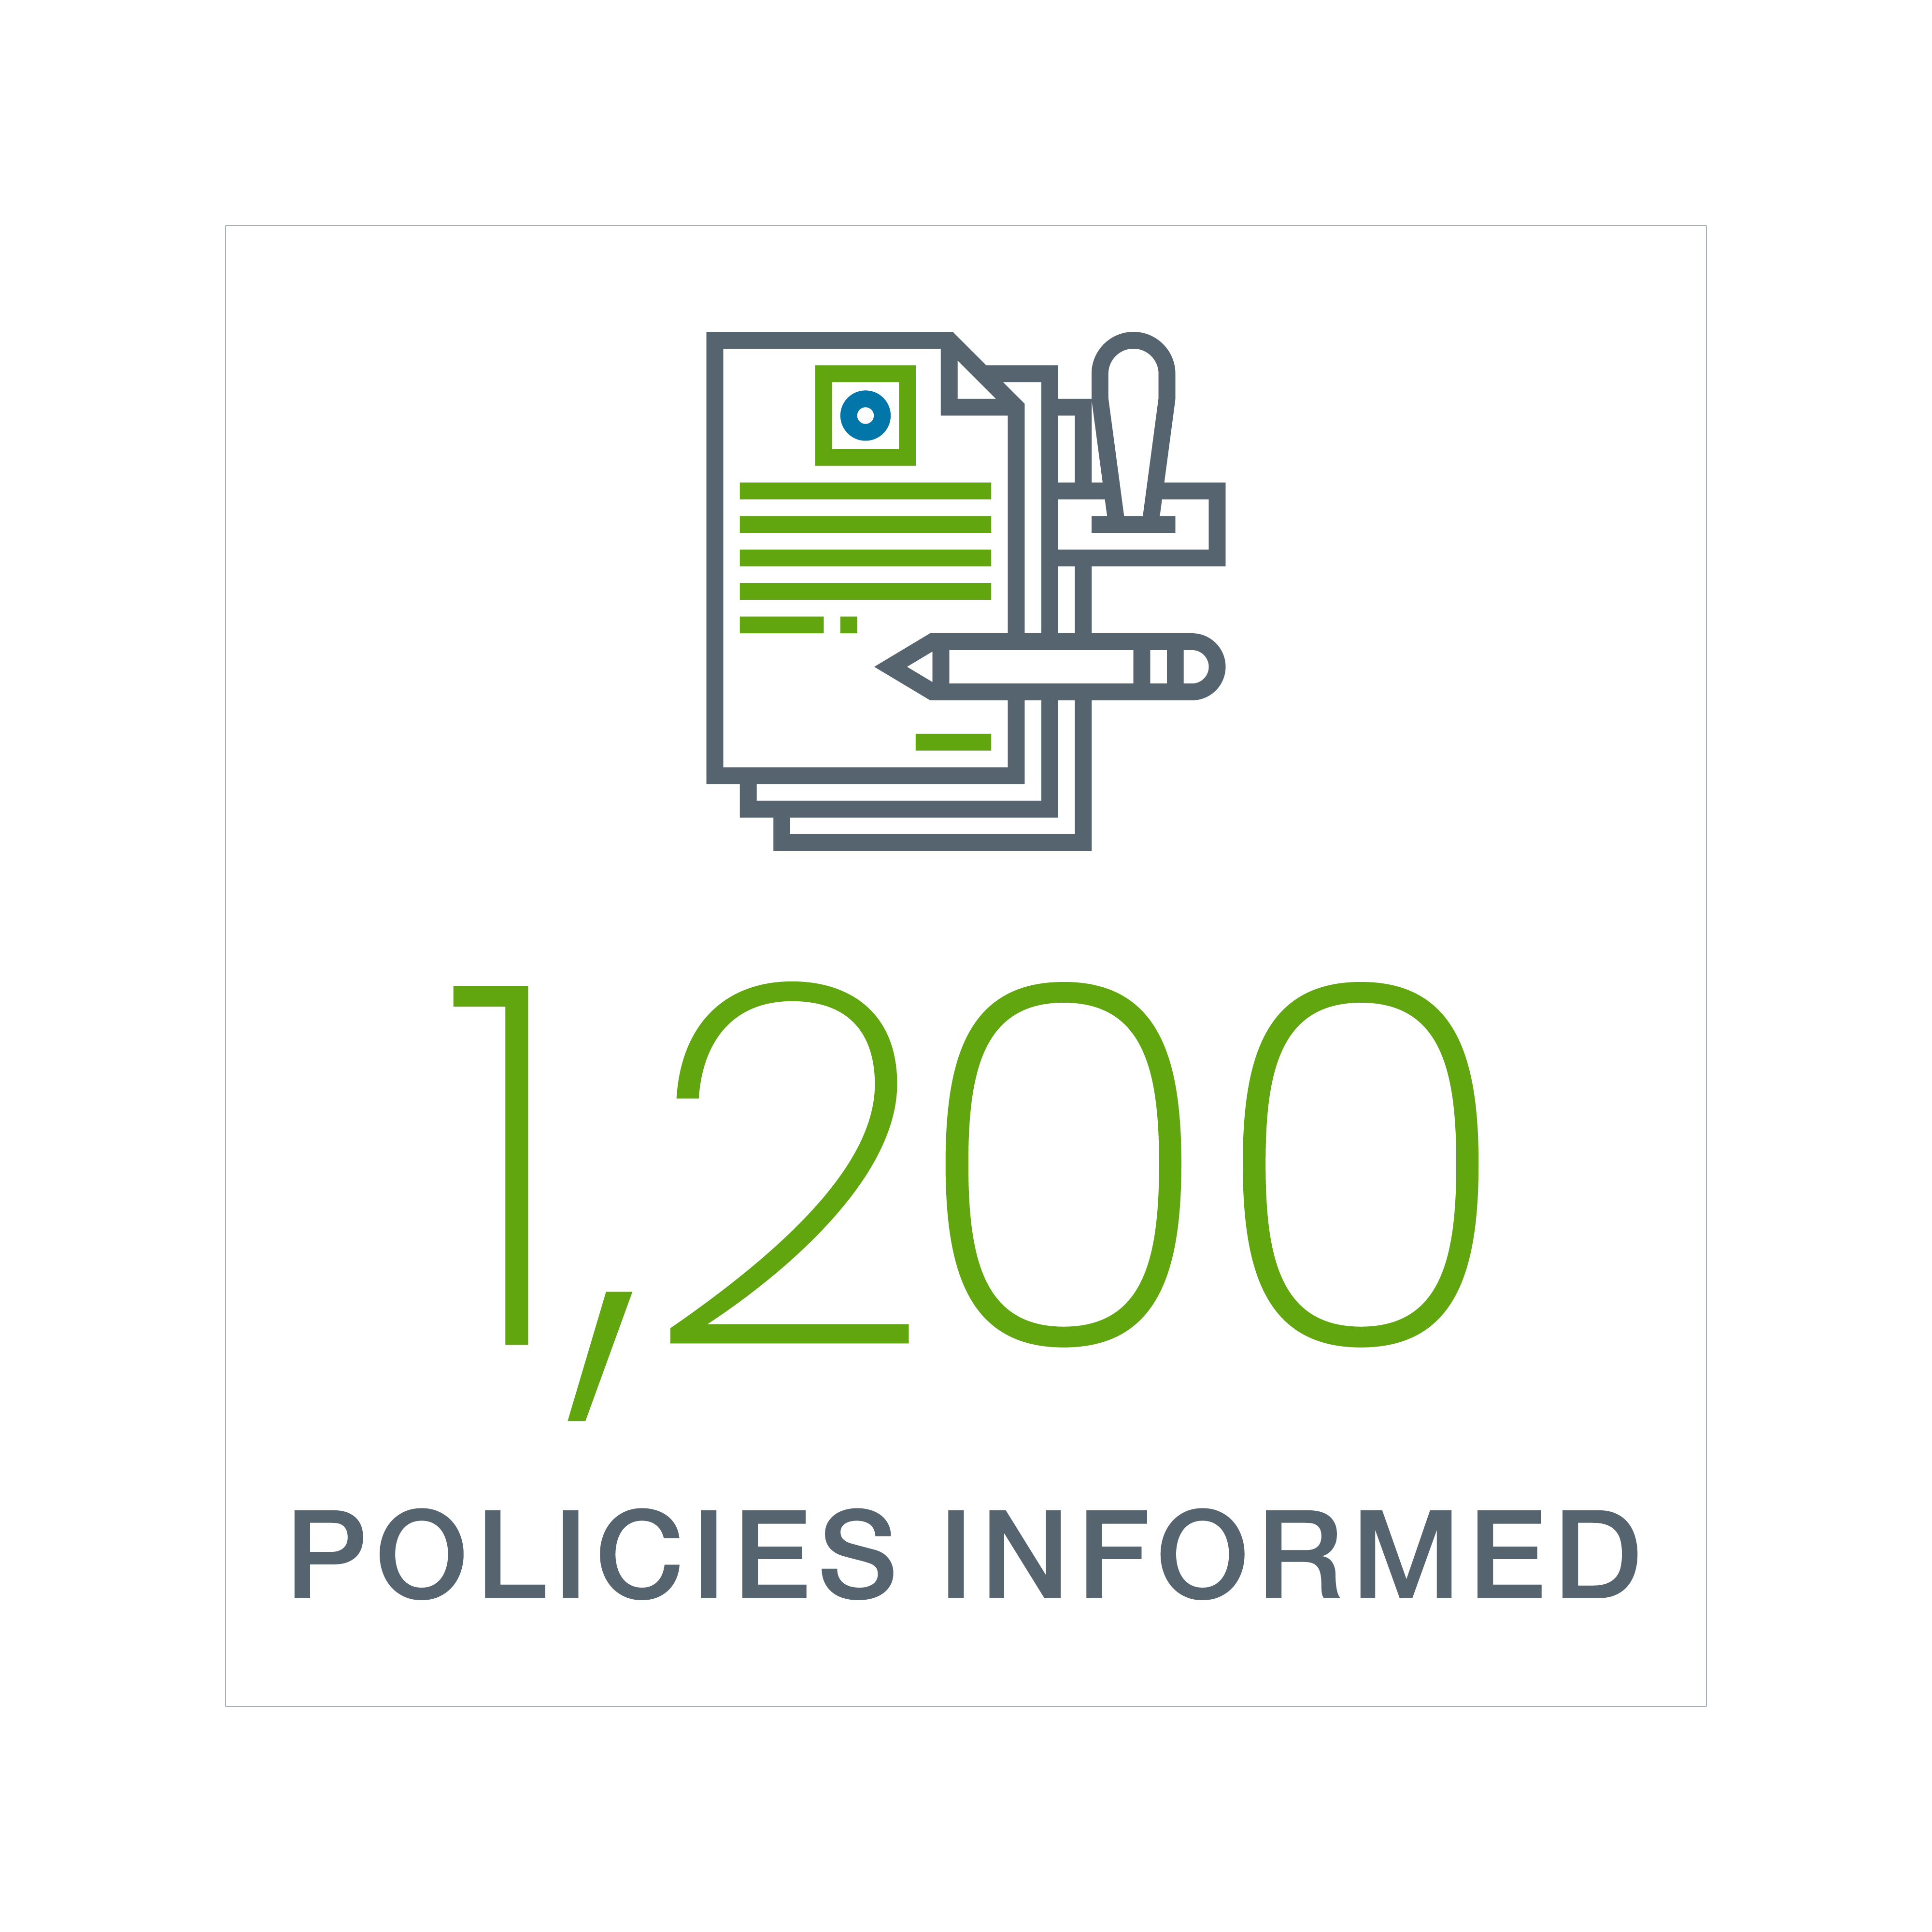 1,200 policies informed